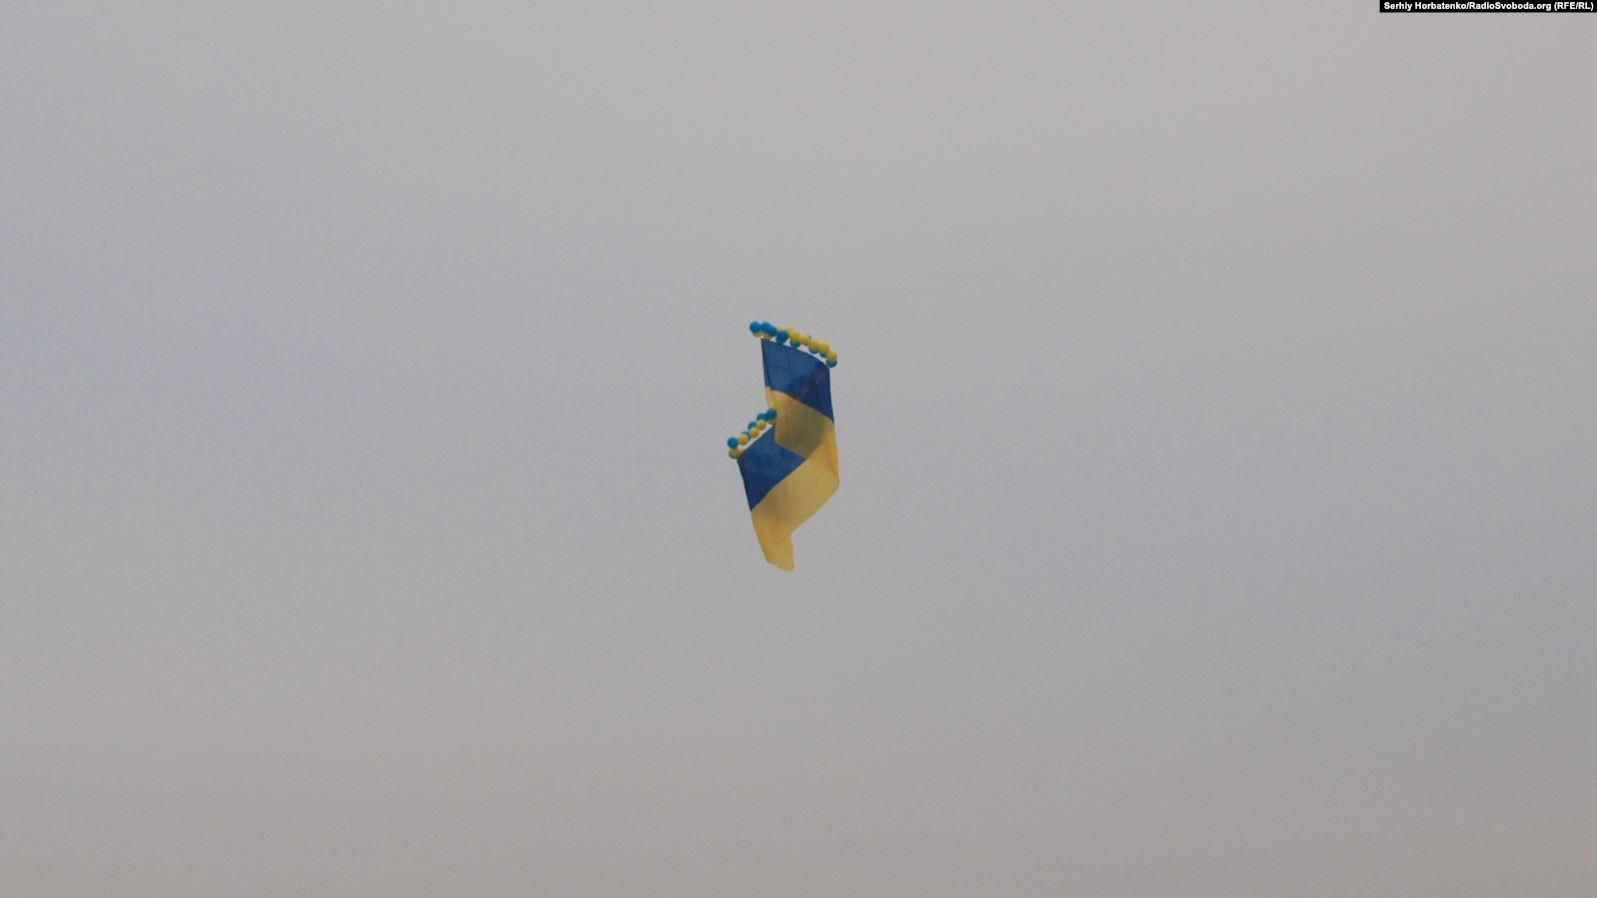 По случаю Дня ВСУ над оккупированным Крымом запустили 20-метровый флаг Украины и проукраинские листовки: фото и детали акции